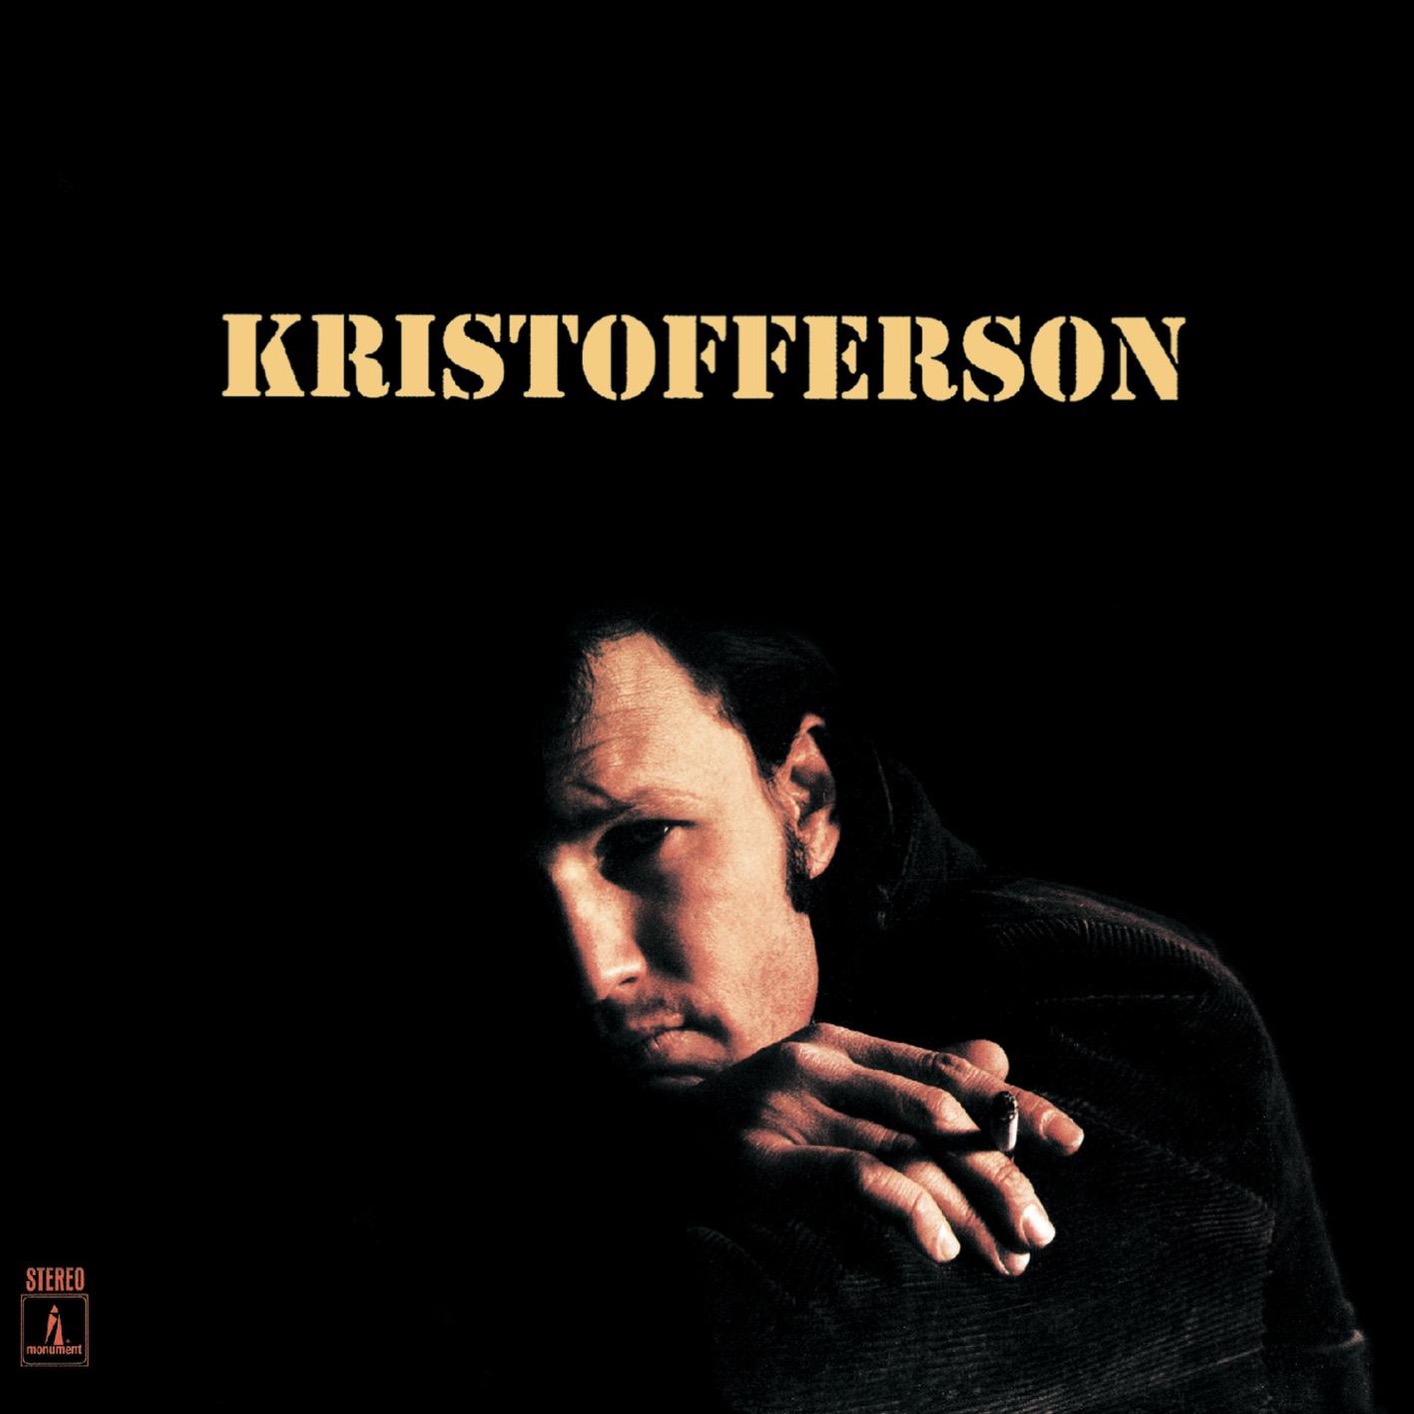 Kris Kristofferson - Kristofferson (1970/2016) [FLAC 24bit/96kHz]